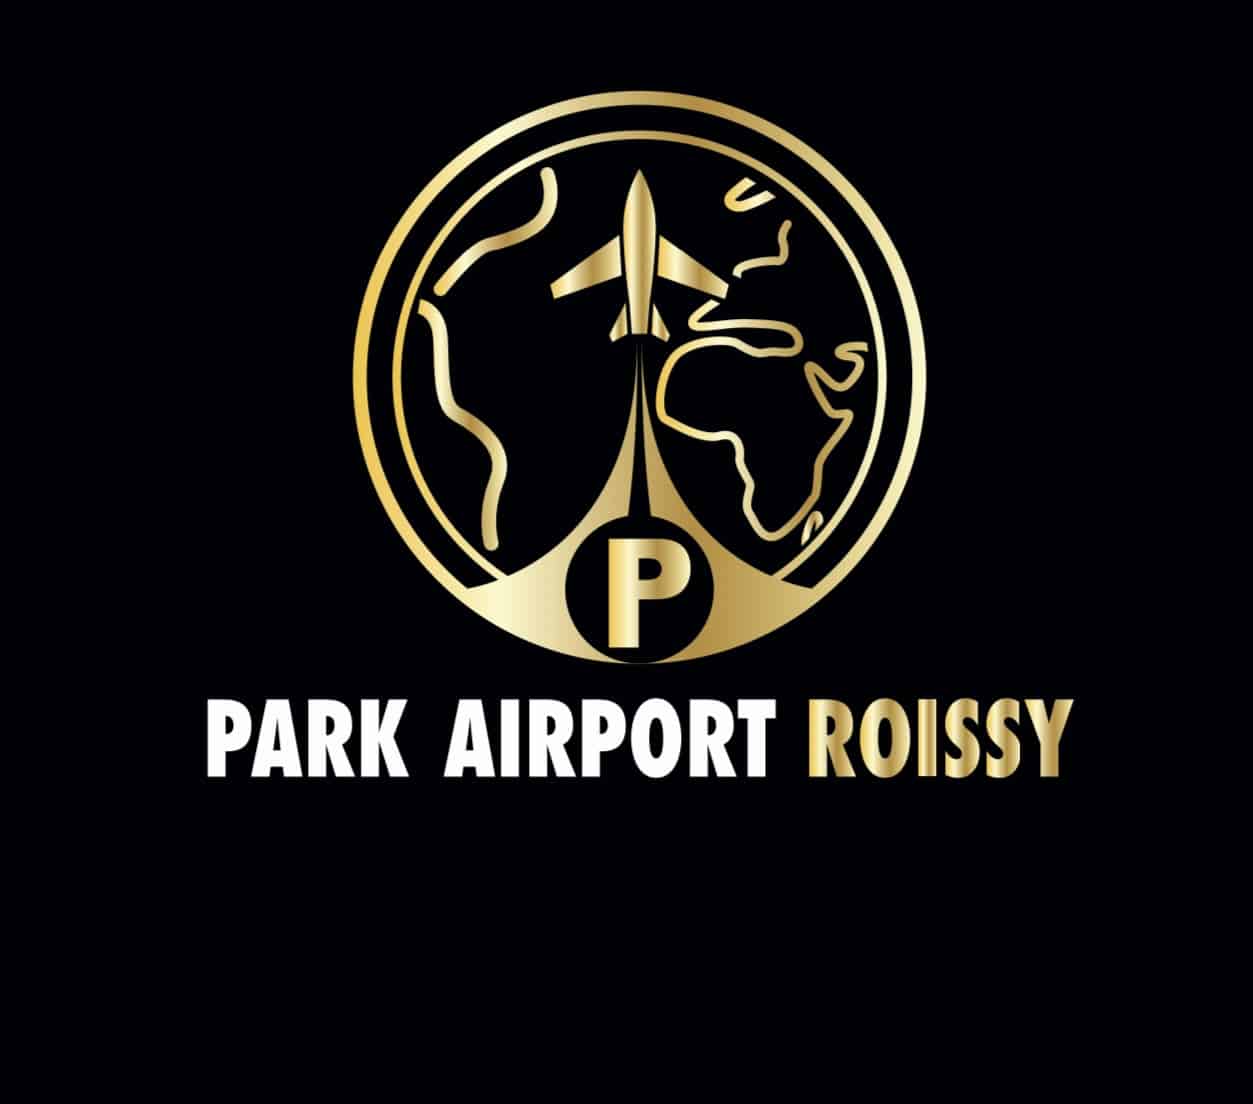 Logo parkairportroissy